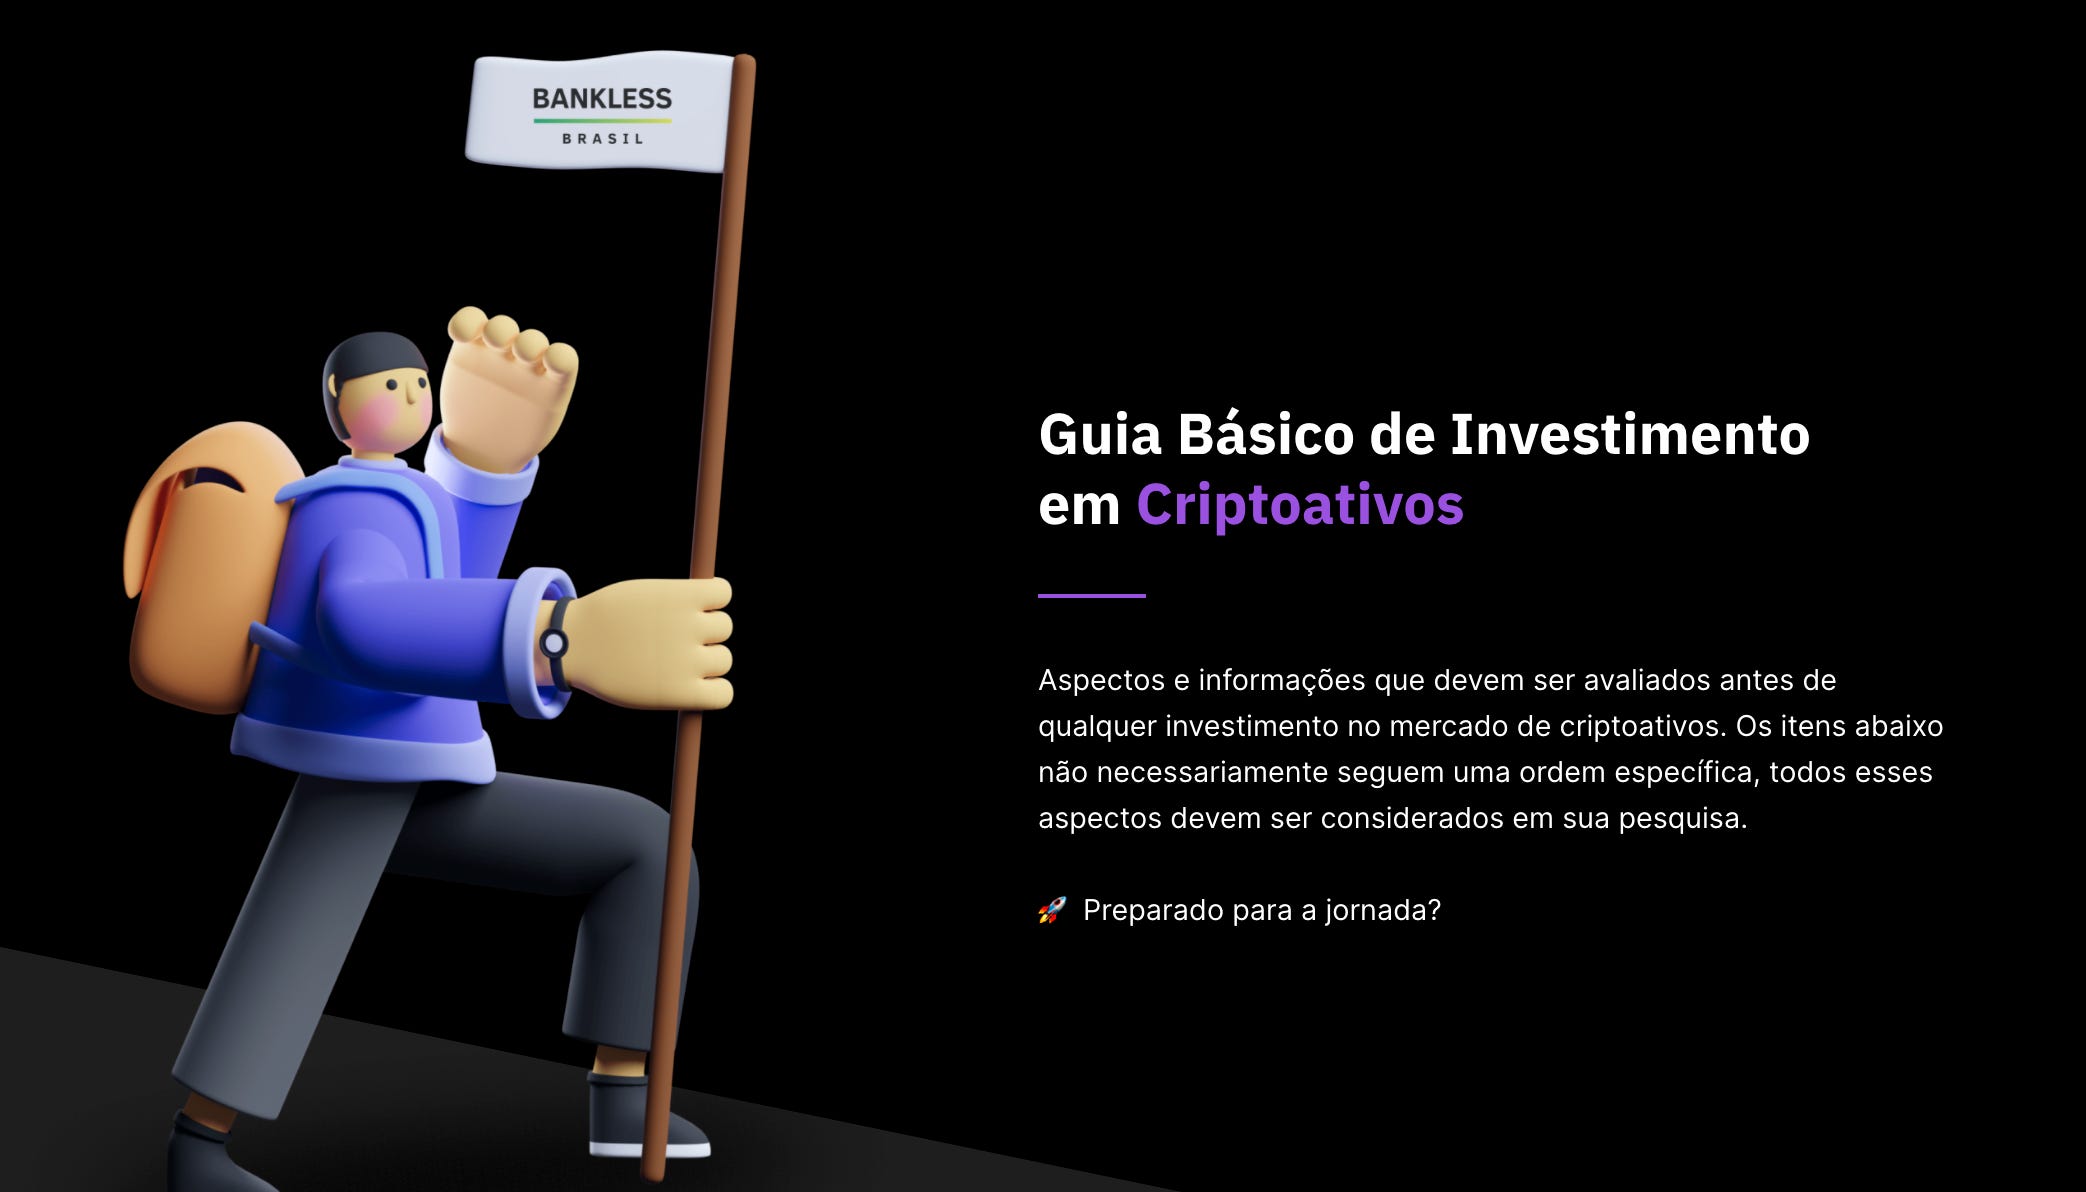 Um guia para o Discord - by Odair Faléco - Bankless Brasil